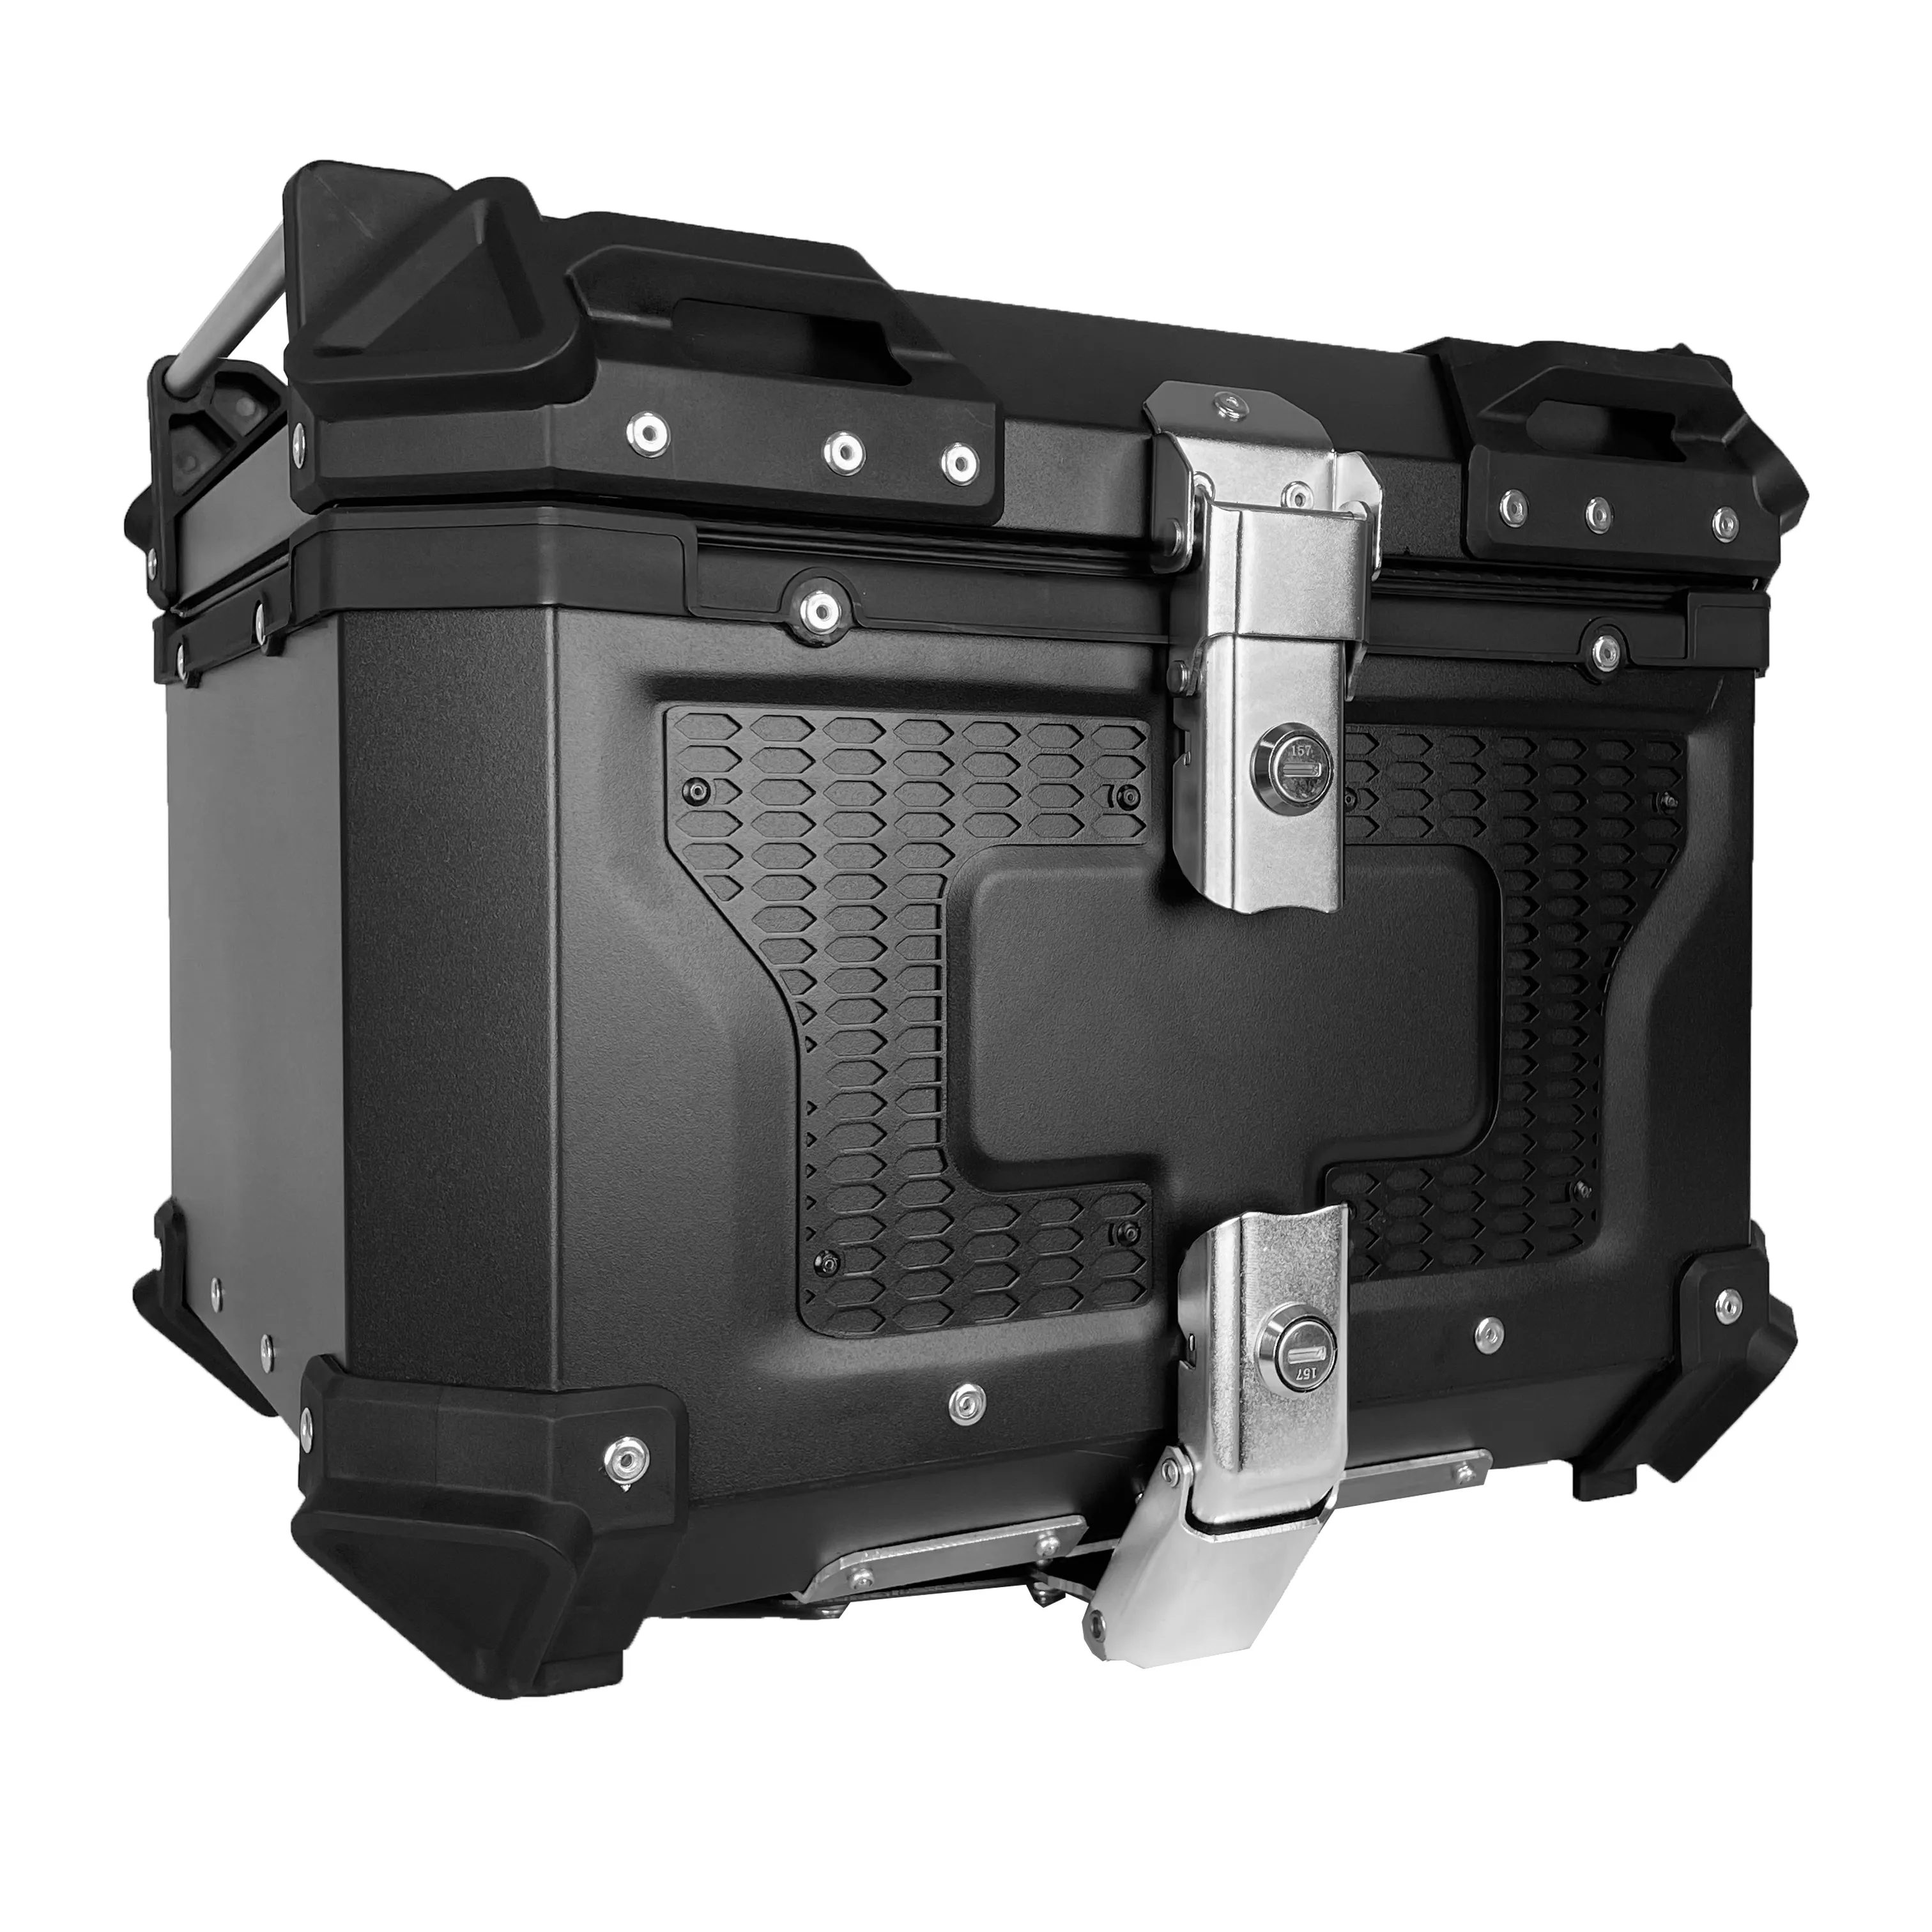 Top box para givi zontes cola scooter pannier ampliable herramienta equipaje de almacenamiento superior de aluminio de la Caja